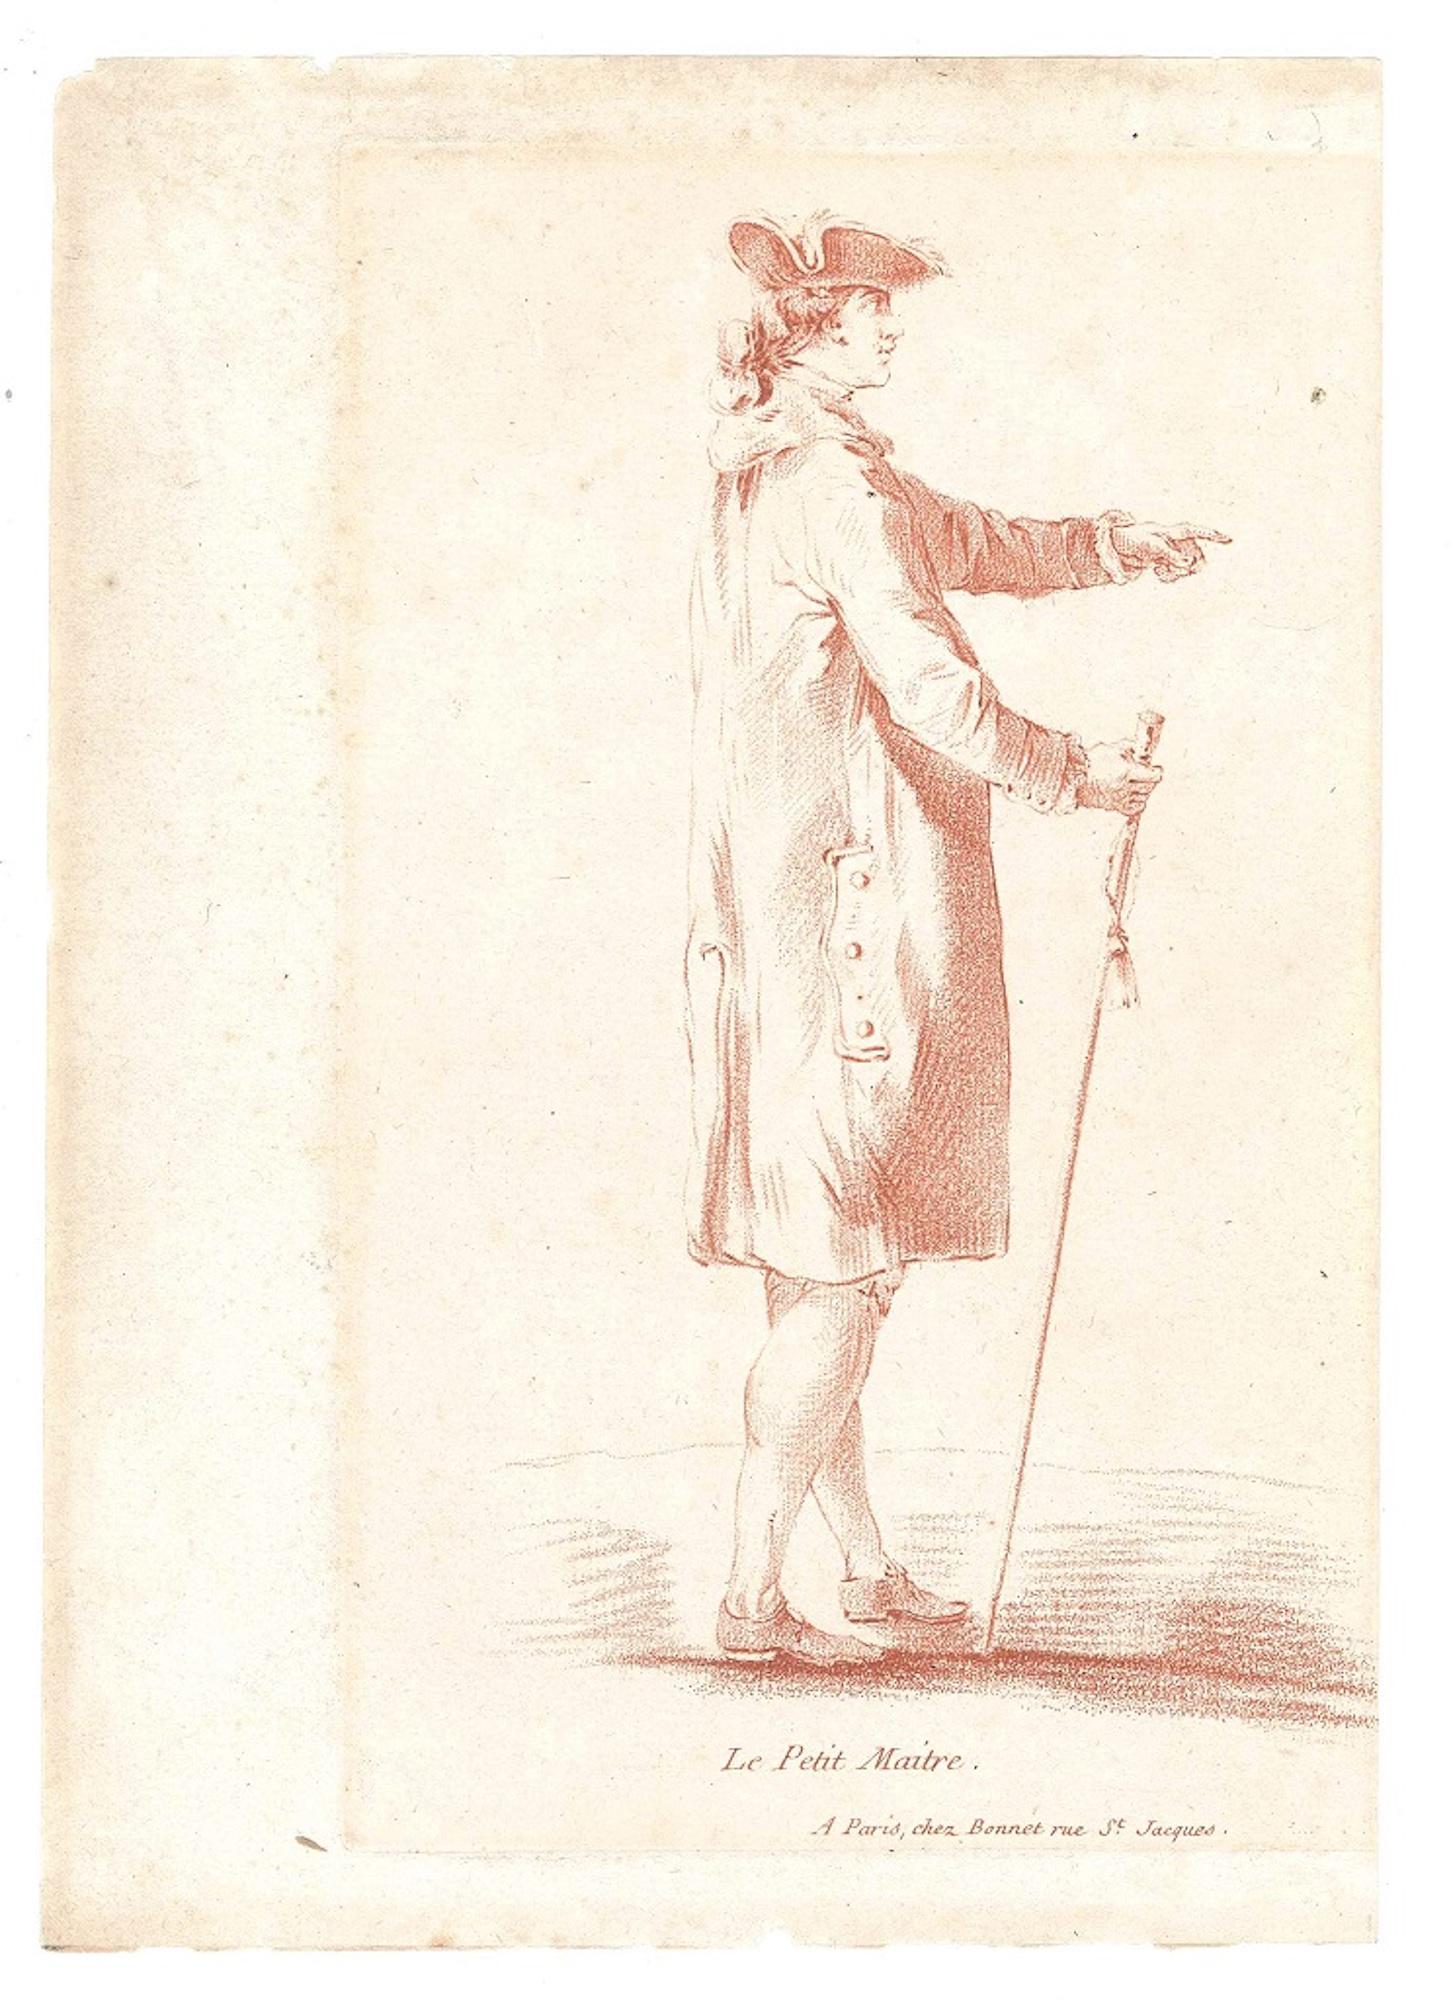 Le Petit Maitre - Original Etching and Pastel by L-M Bonnet - Late 18th Century